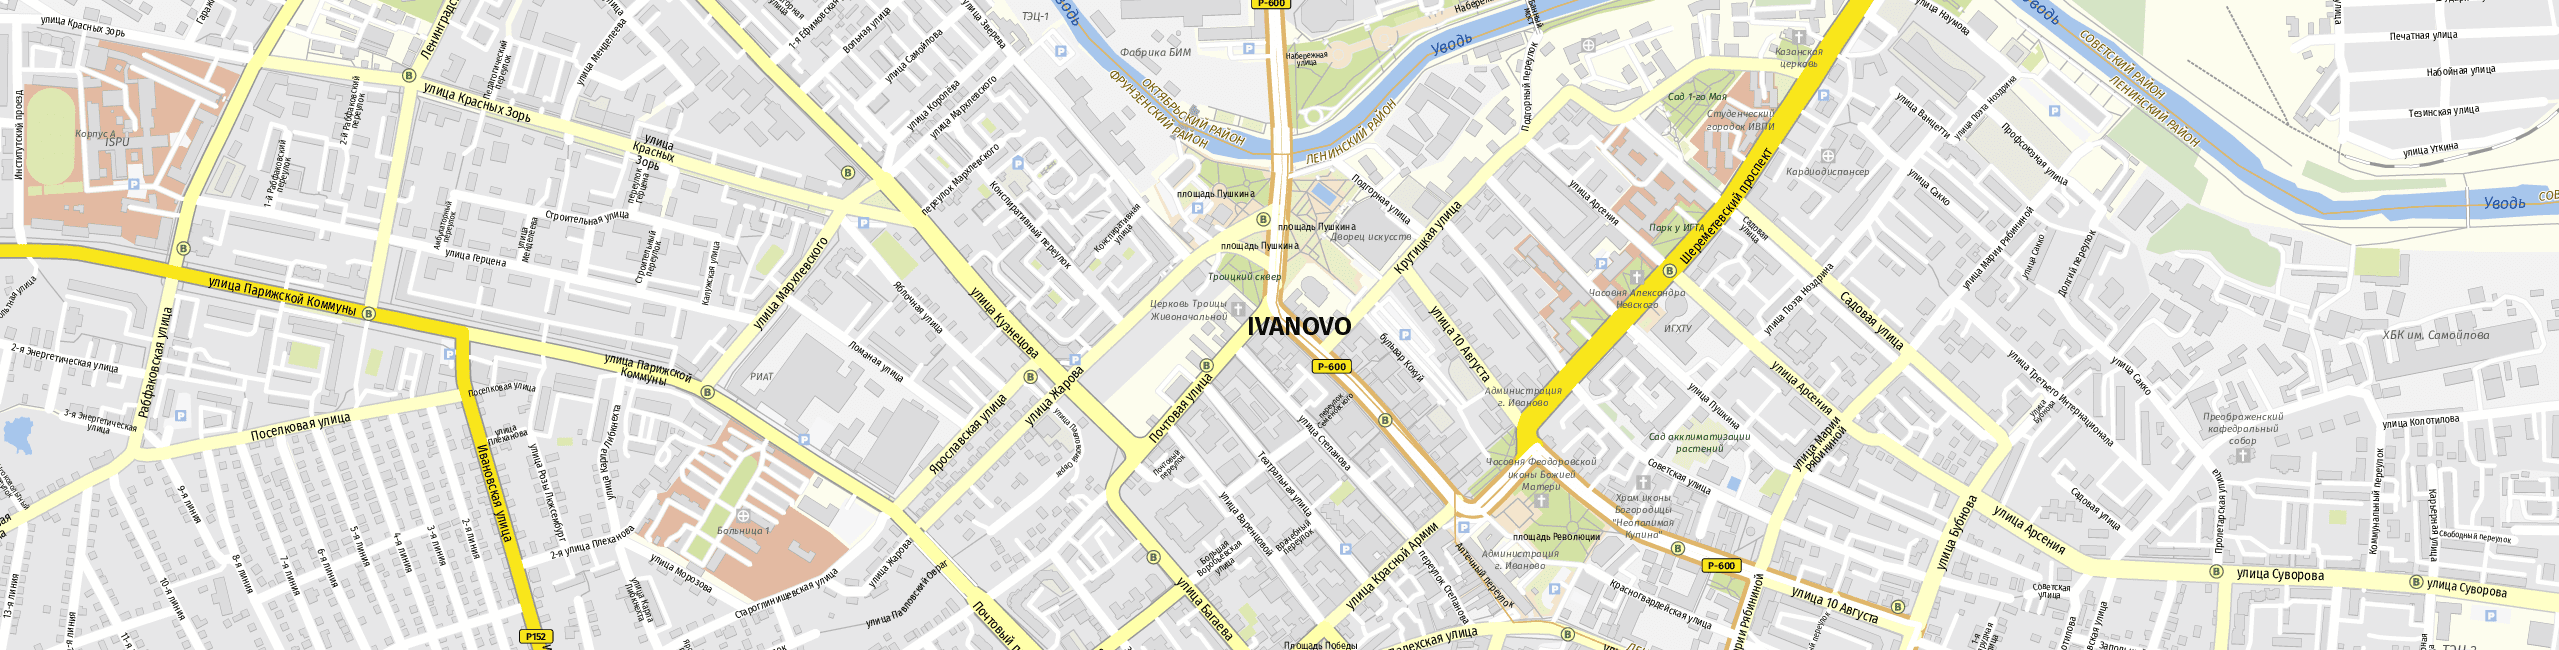 Stadtplan Iwanowo zum Downloaden.